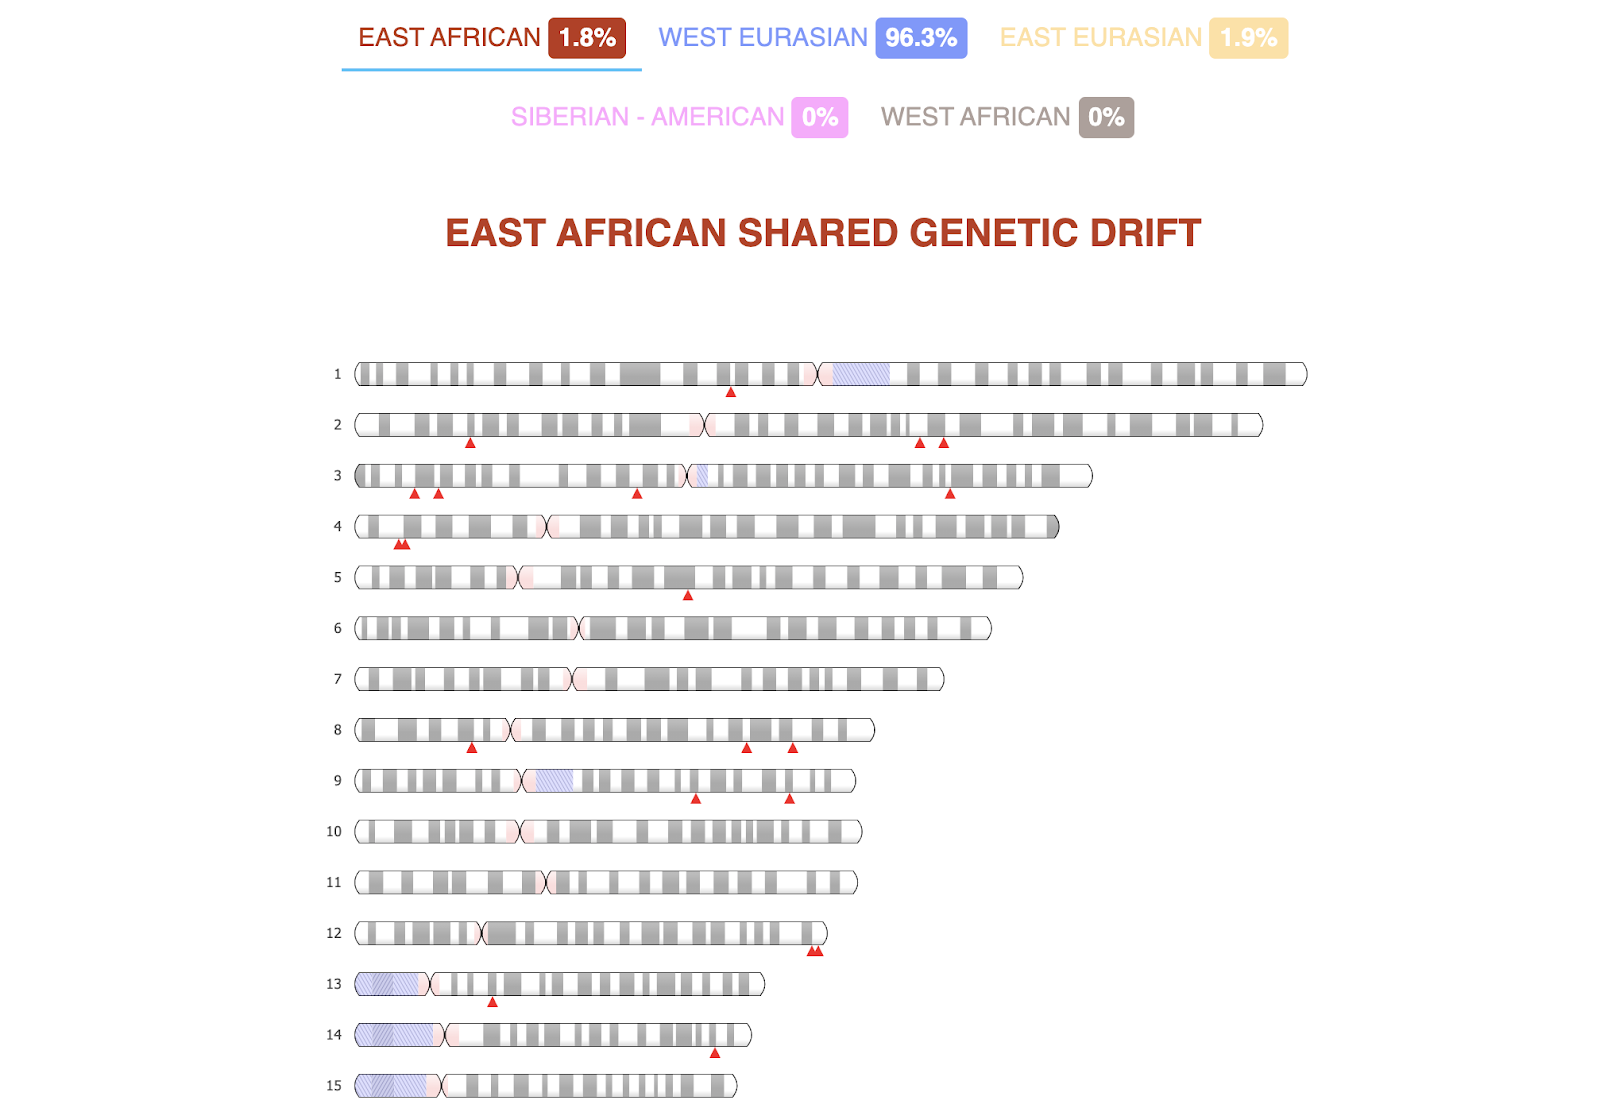 15本の染色体をアフリカ系に色分けして表現し、GenePlazaのスクリーンショットの上部にキーを表示したもの